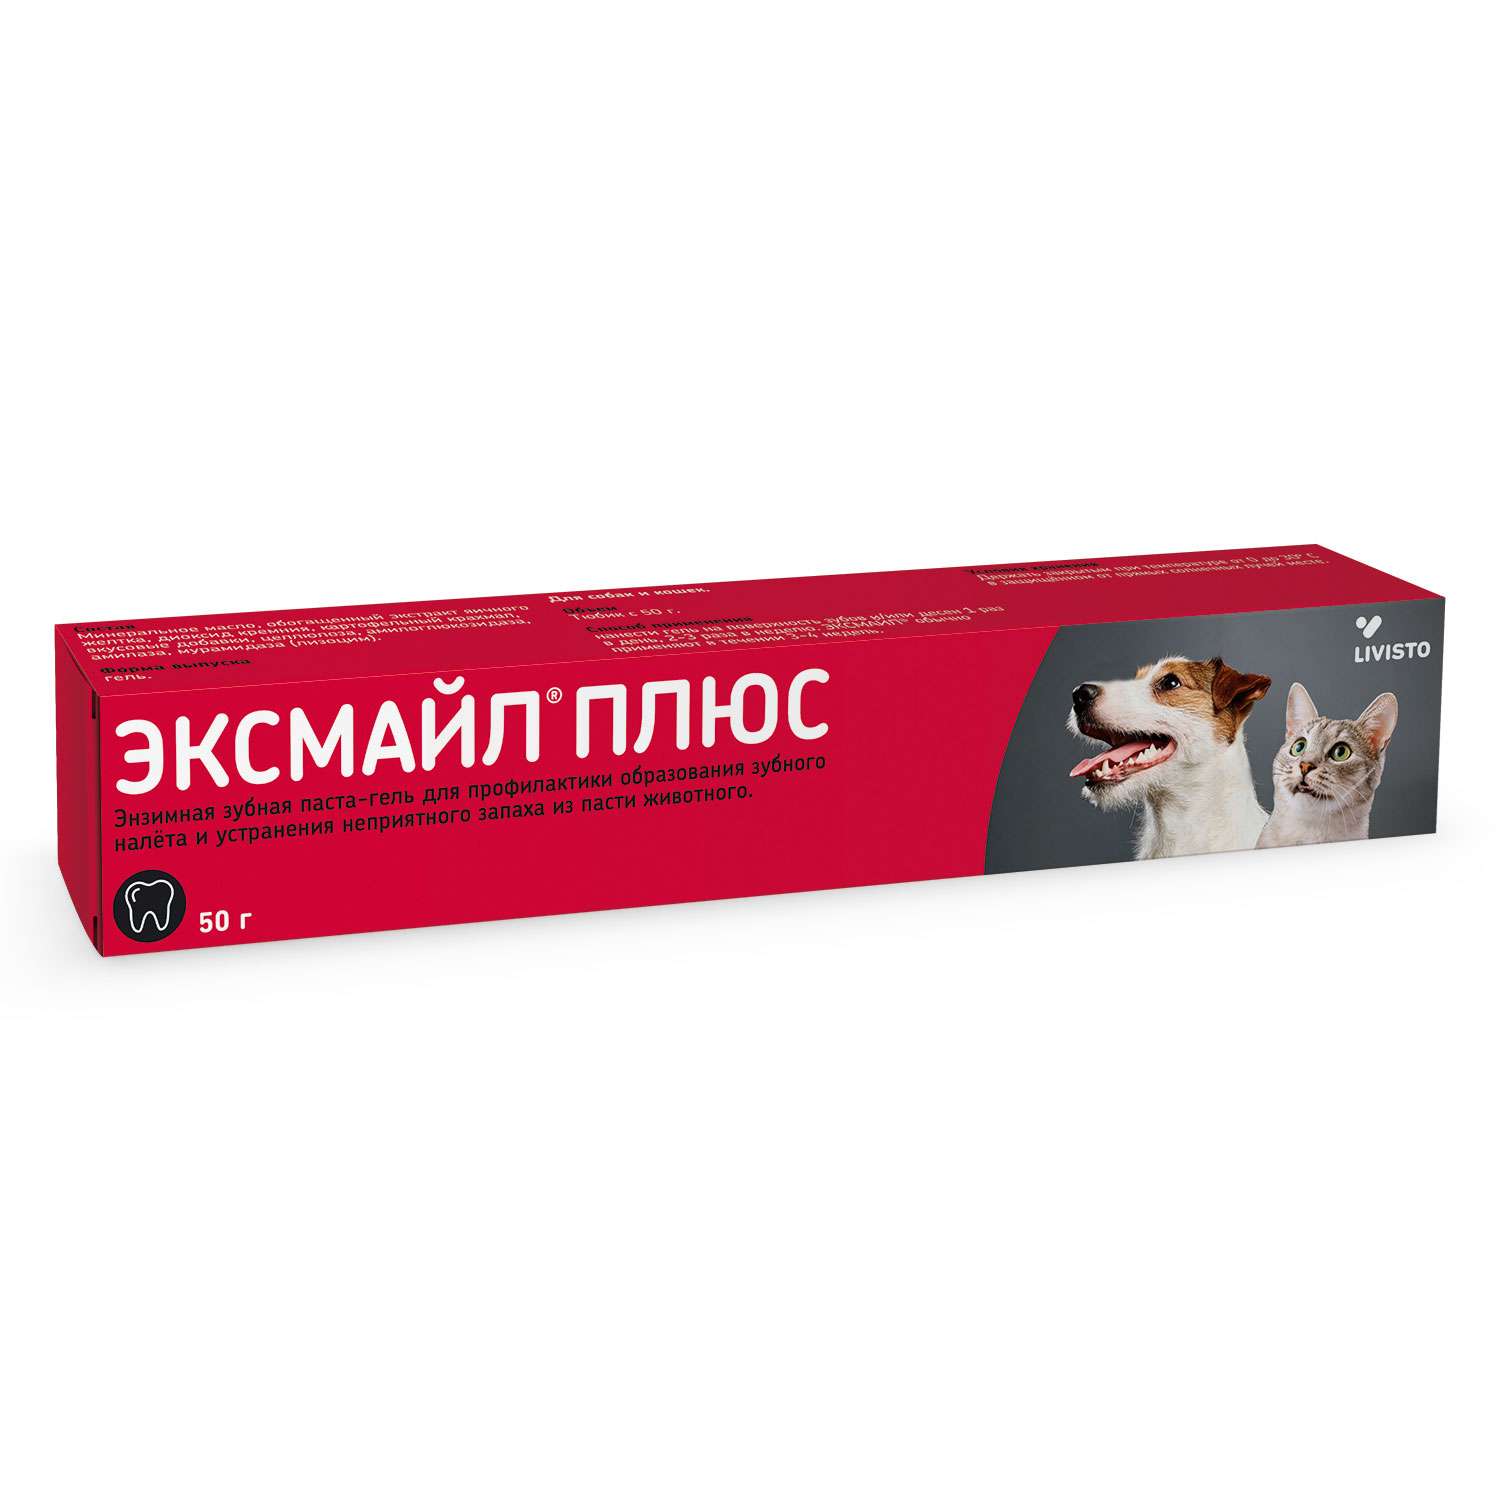 Паста зубная для собак и кошек Livisto Эксмайл Плюс 50г - фото 1